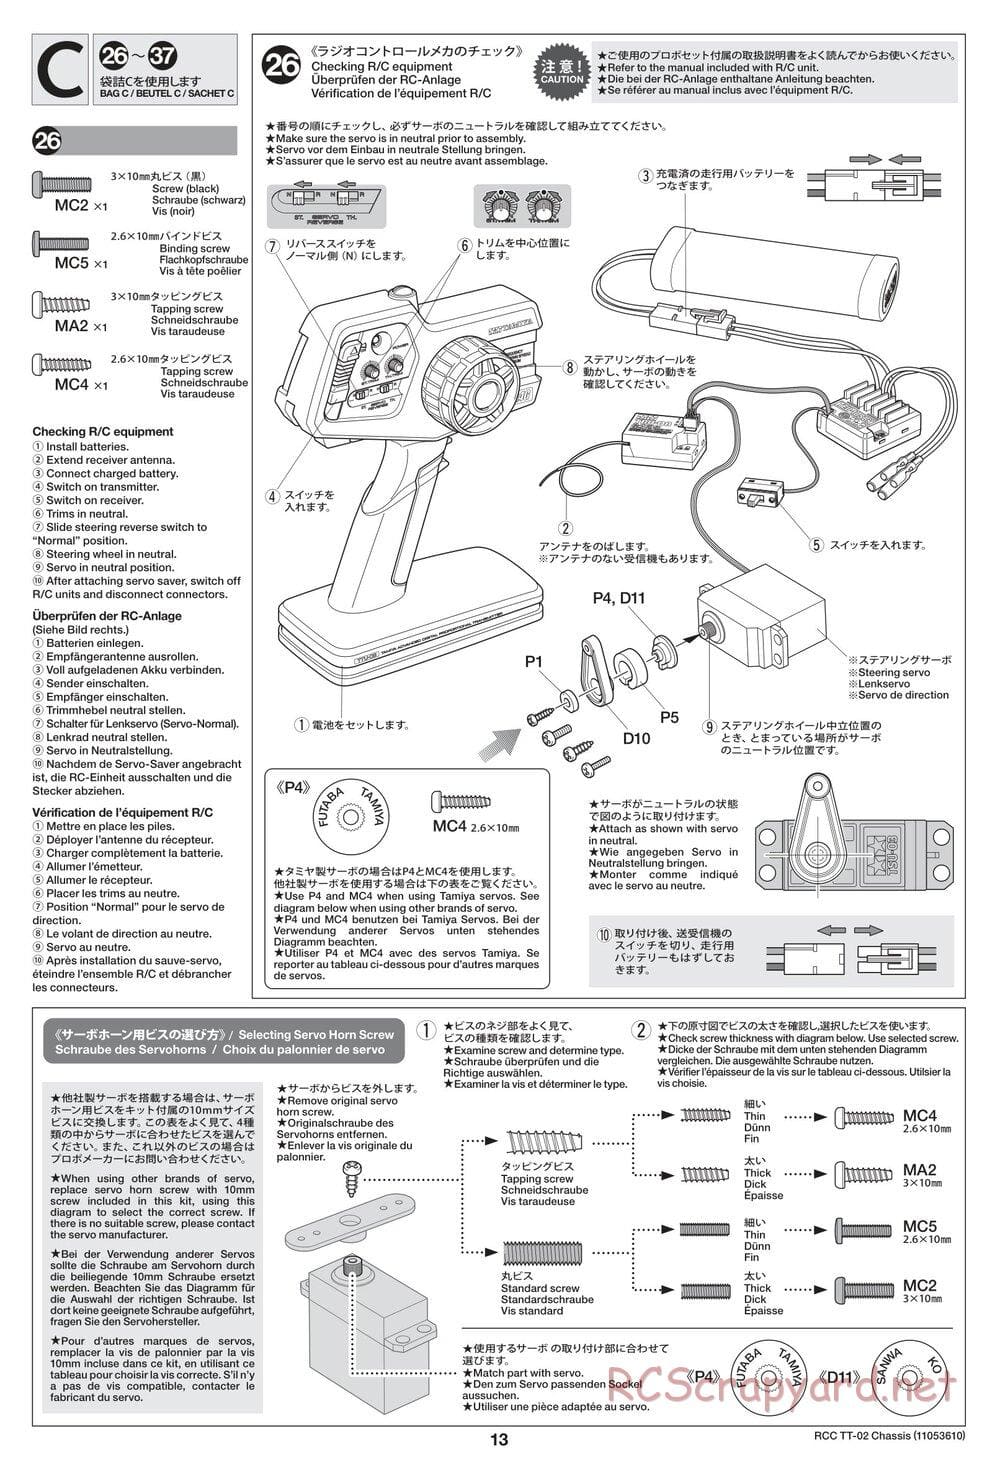 Tamiya - TT-02 Chassis - Manual - Page 13